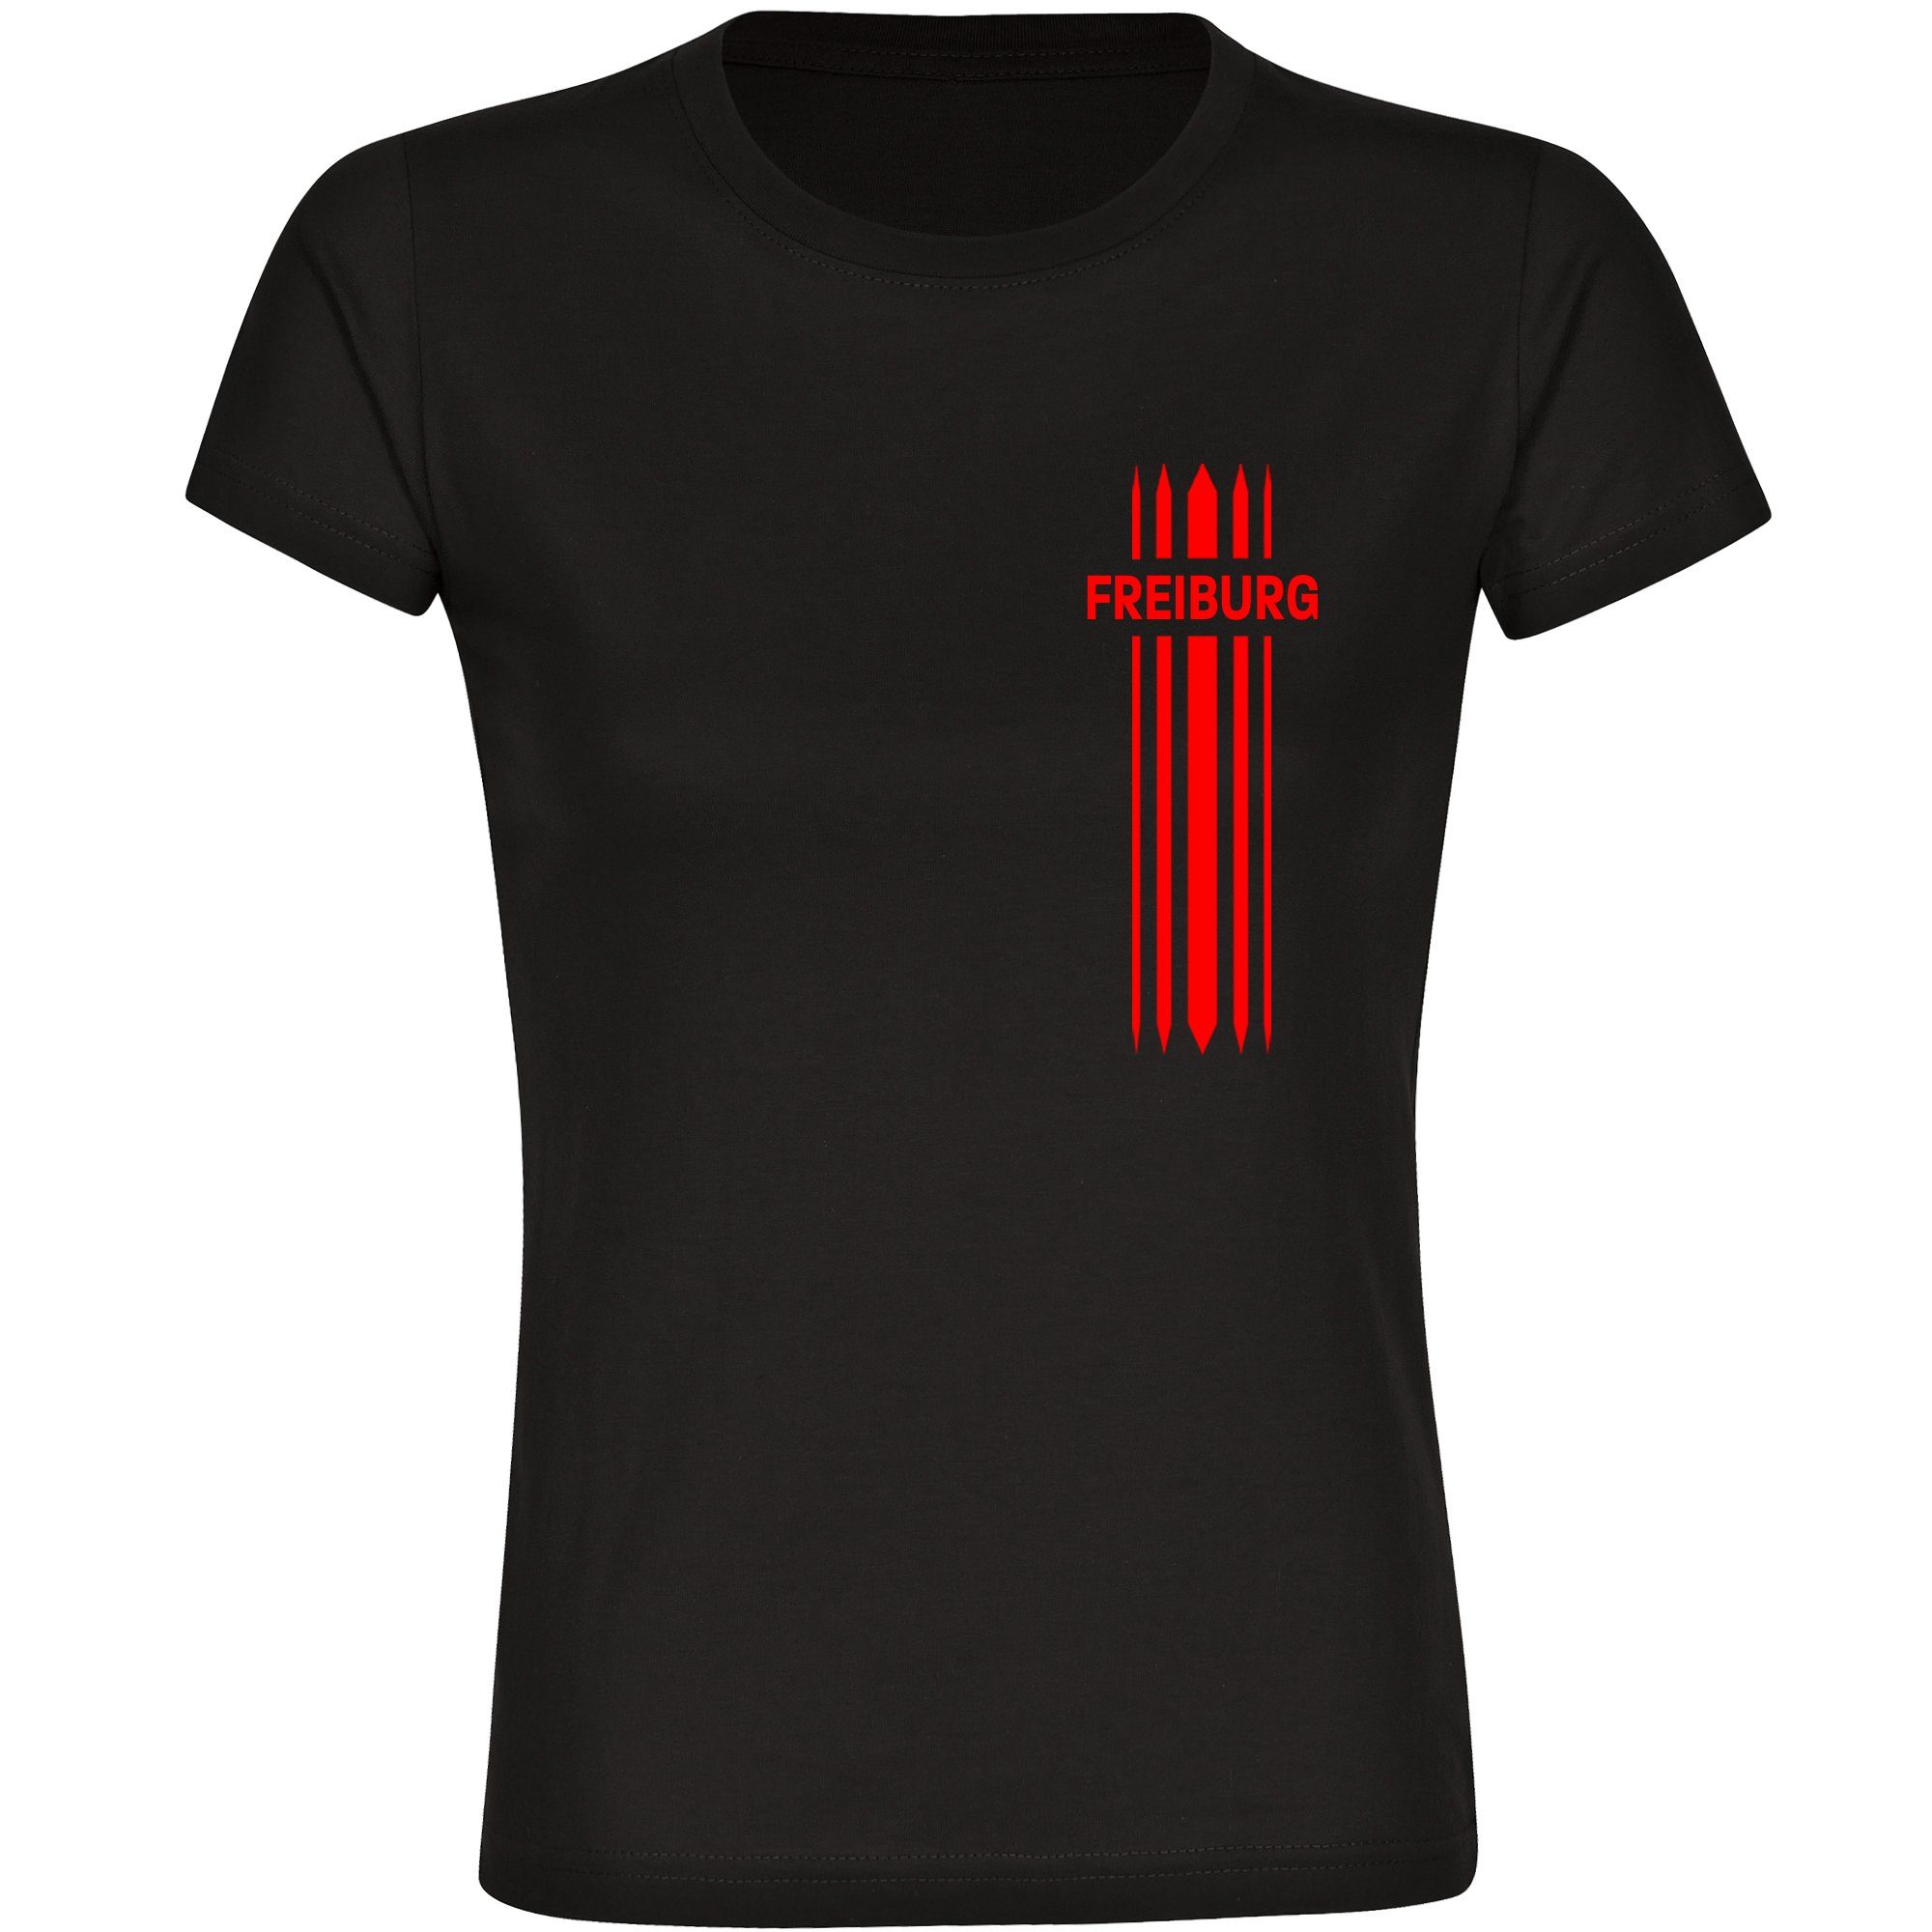 multifanshop T-Shirt Damen Freiburg - Streifen - Frauen